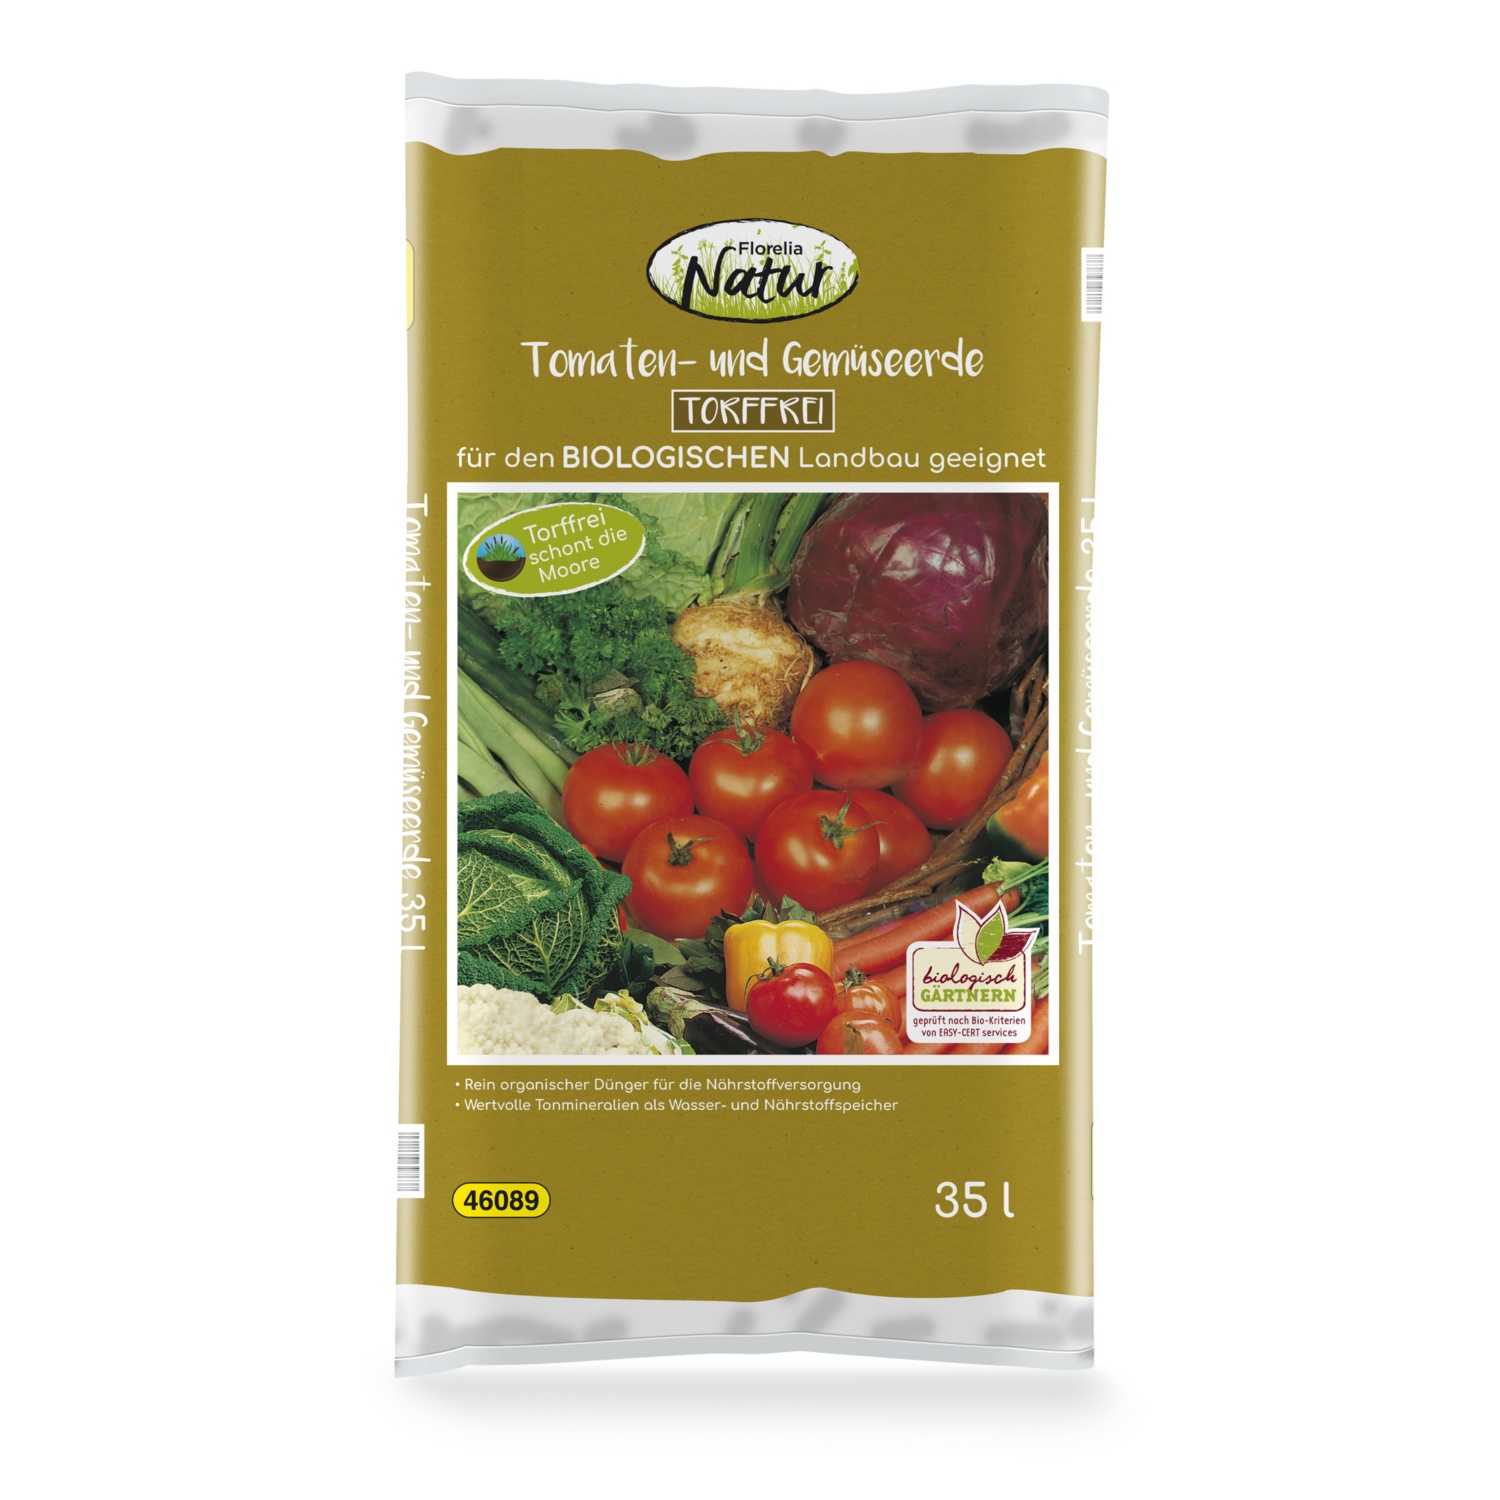 FLORELIA NATUR Tomaten- und Gemüseerde torffrei 35 l